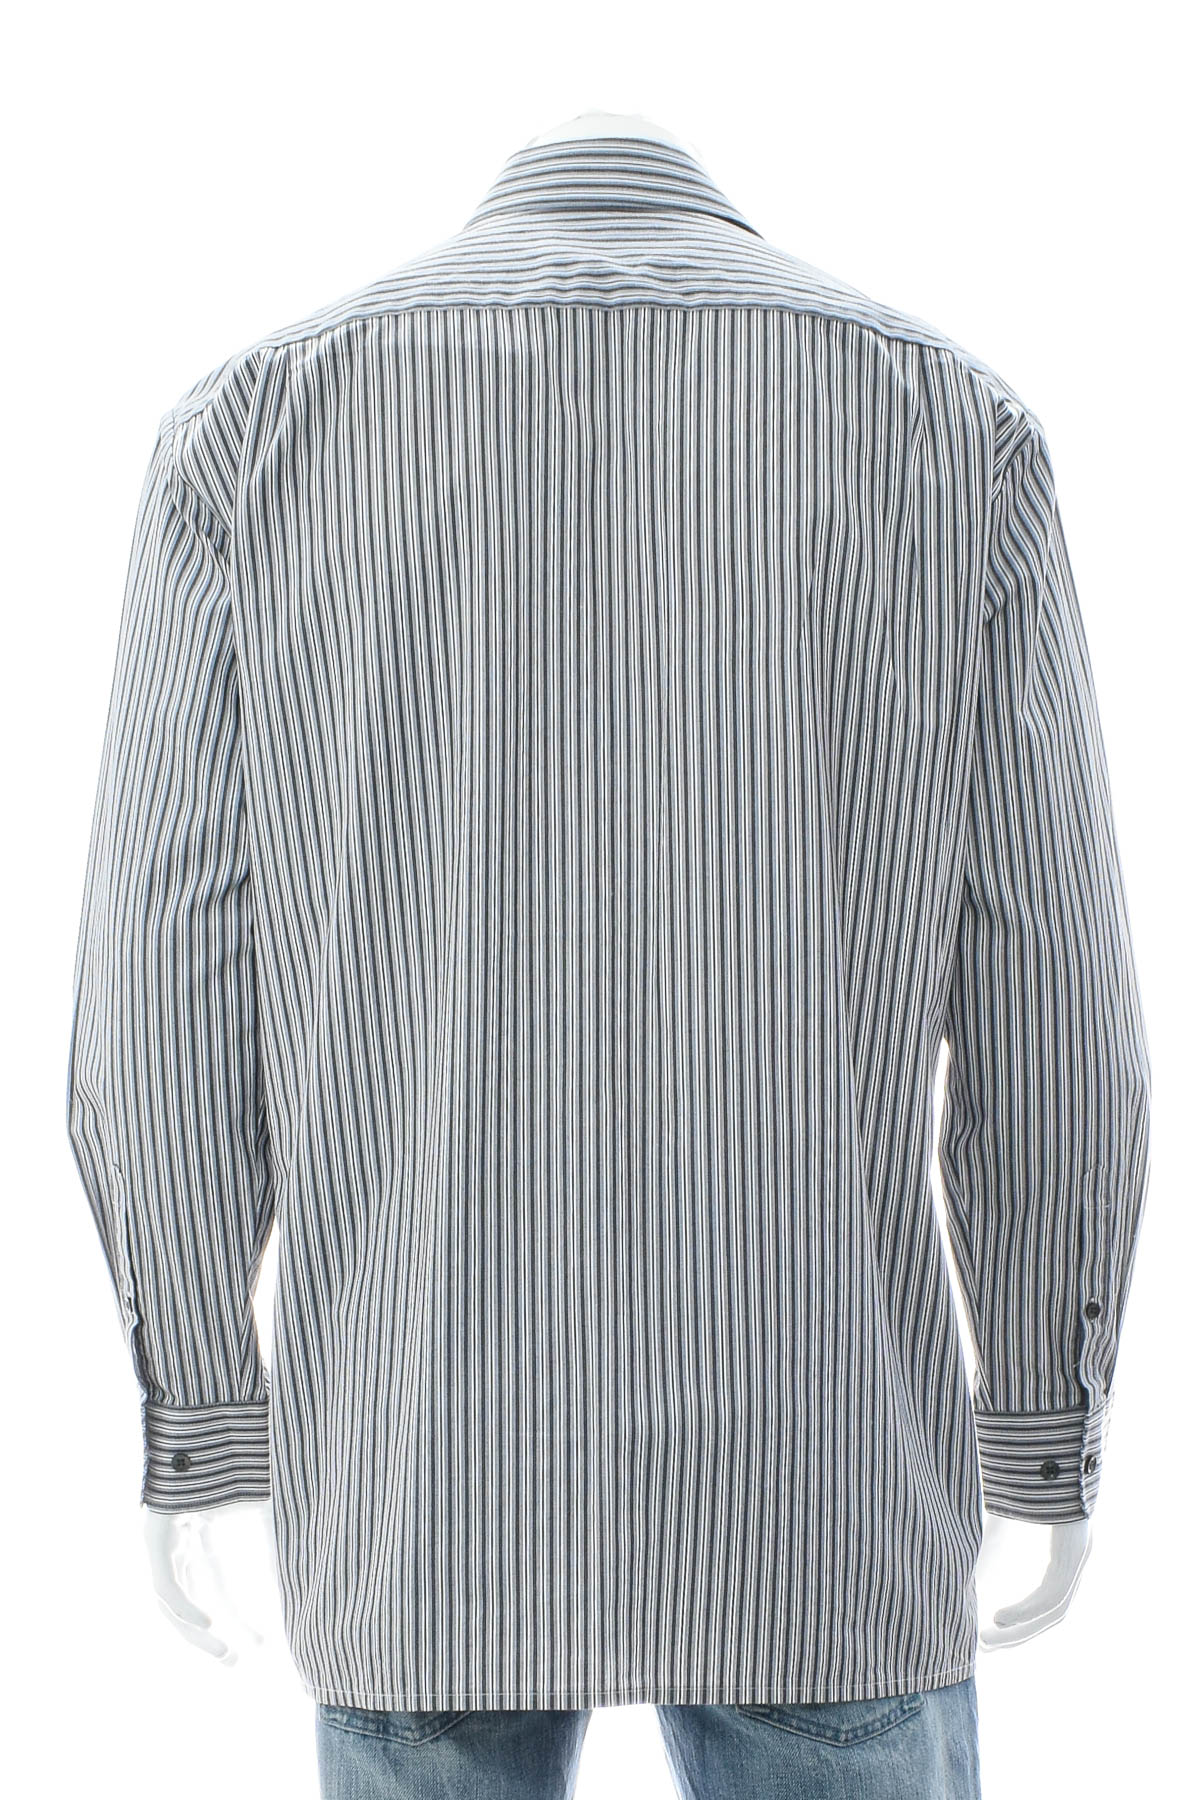 Ανδρικό πουκάμισο - Bernd Berger - 1